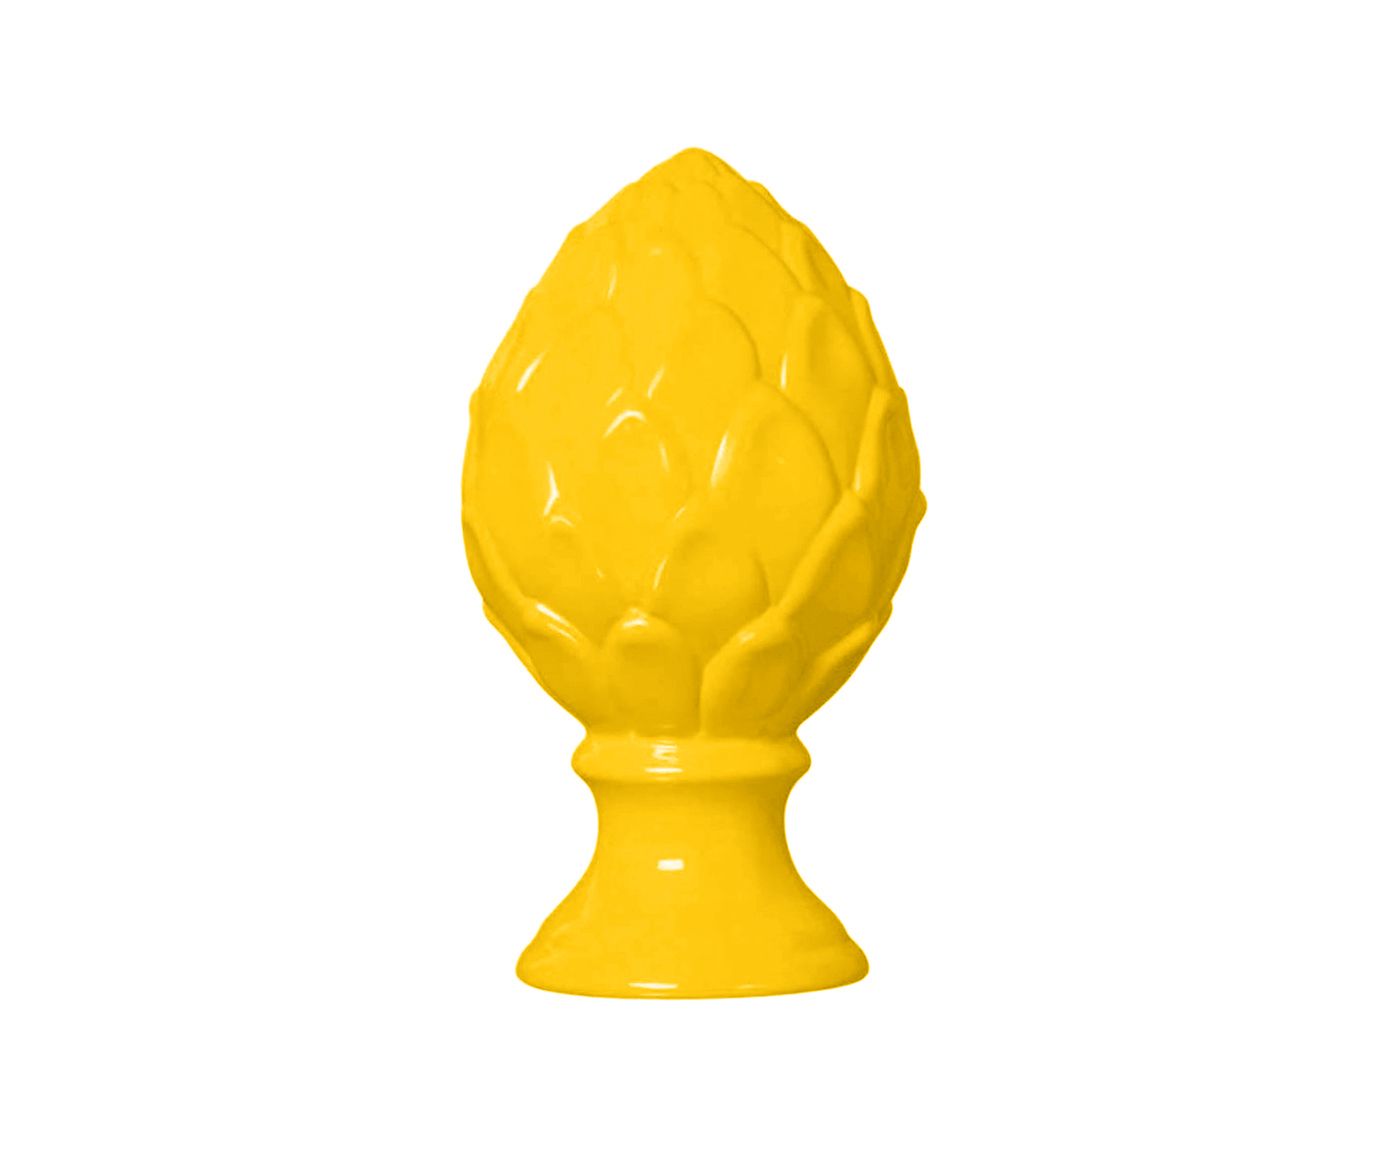 Adorno Lora Amarelo - 33cm | Westwing.com.br